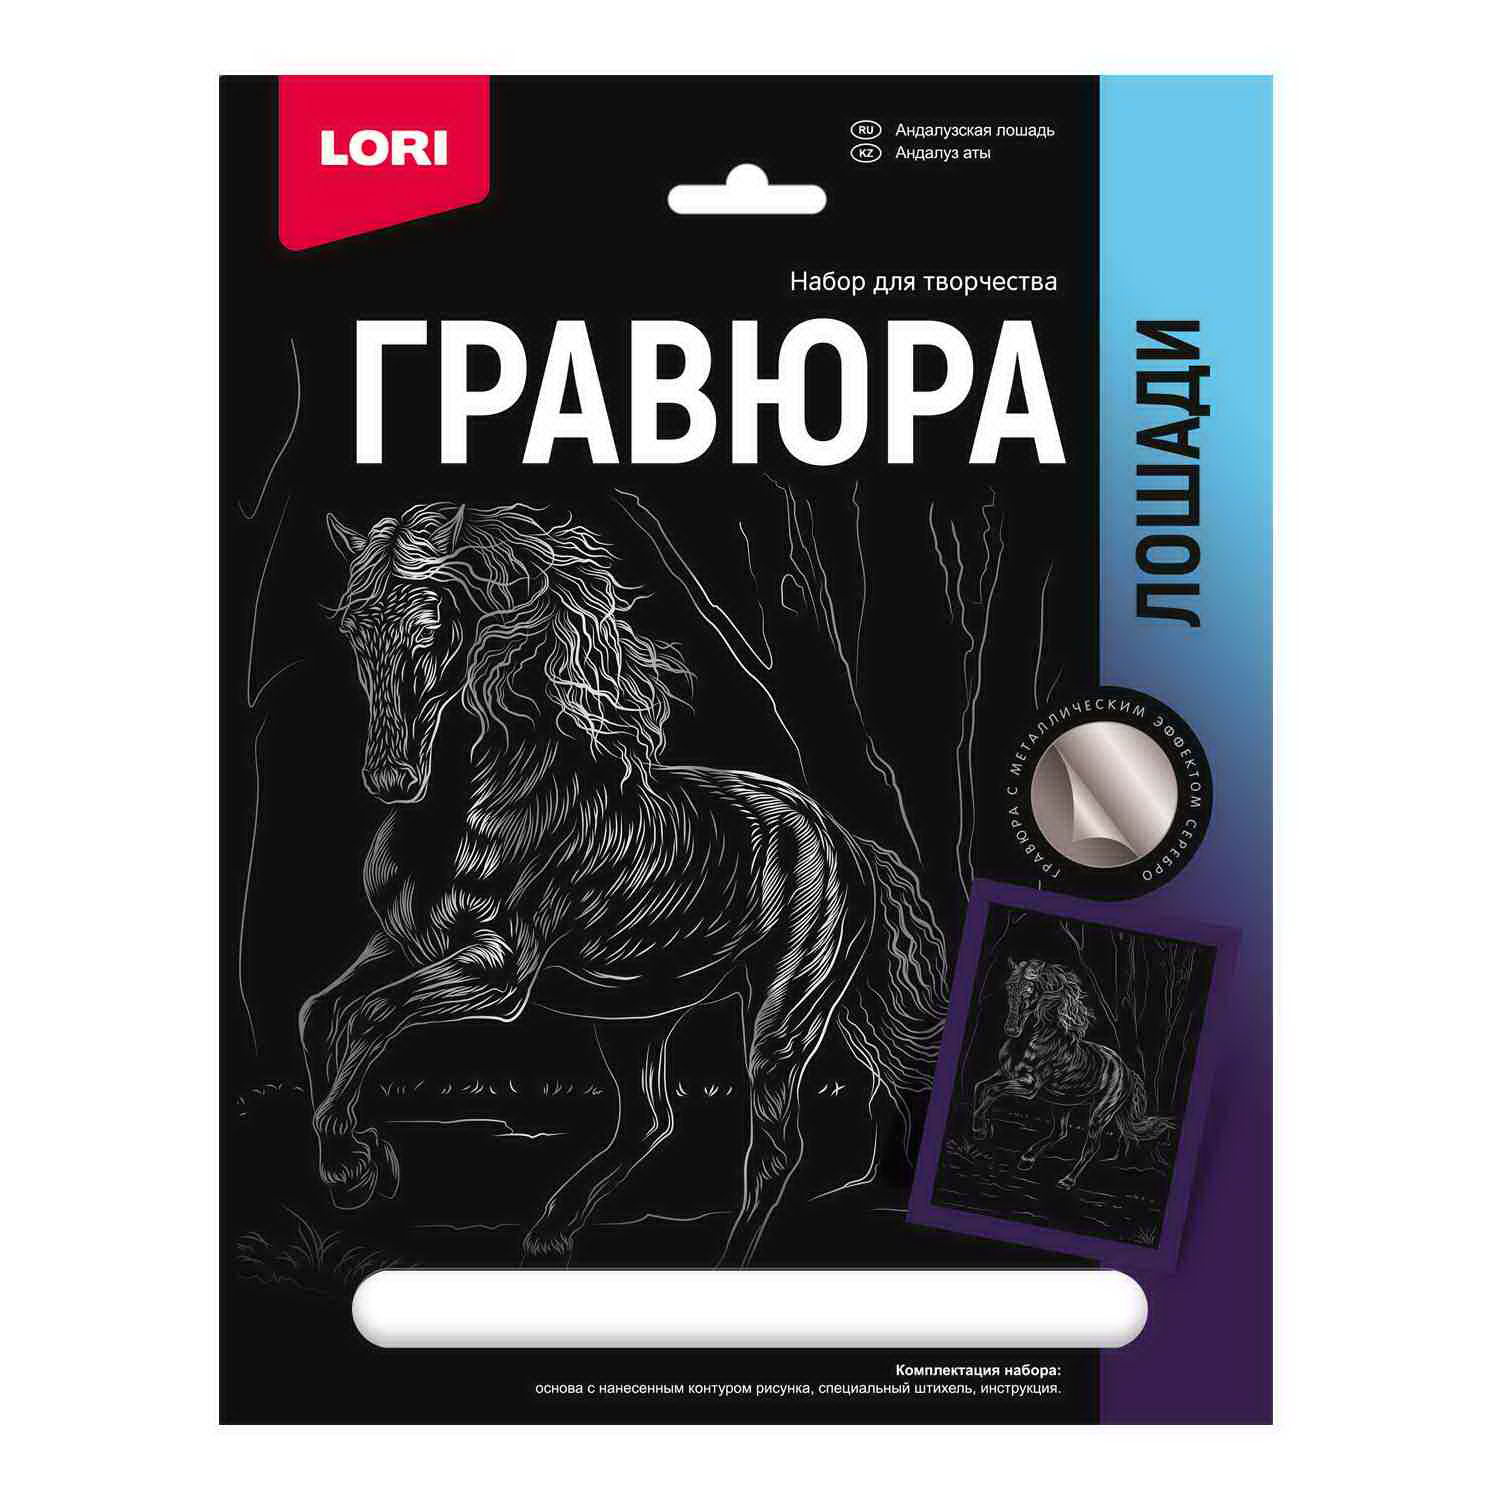 фото Набор для творчества lori гравюра лошади андалузская лошадь (серебро) 18*24см